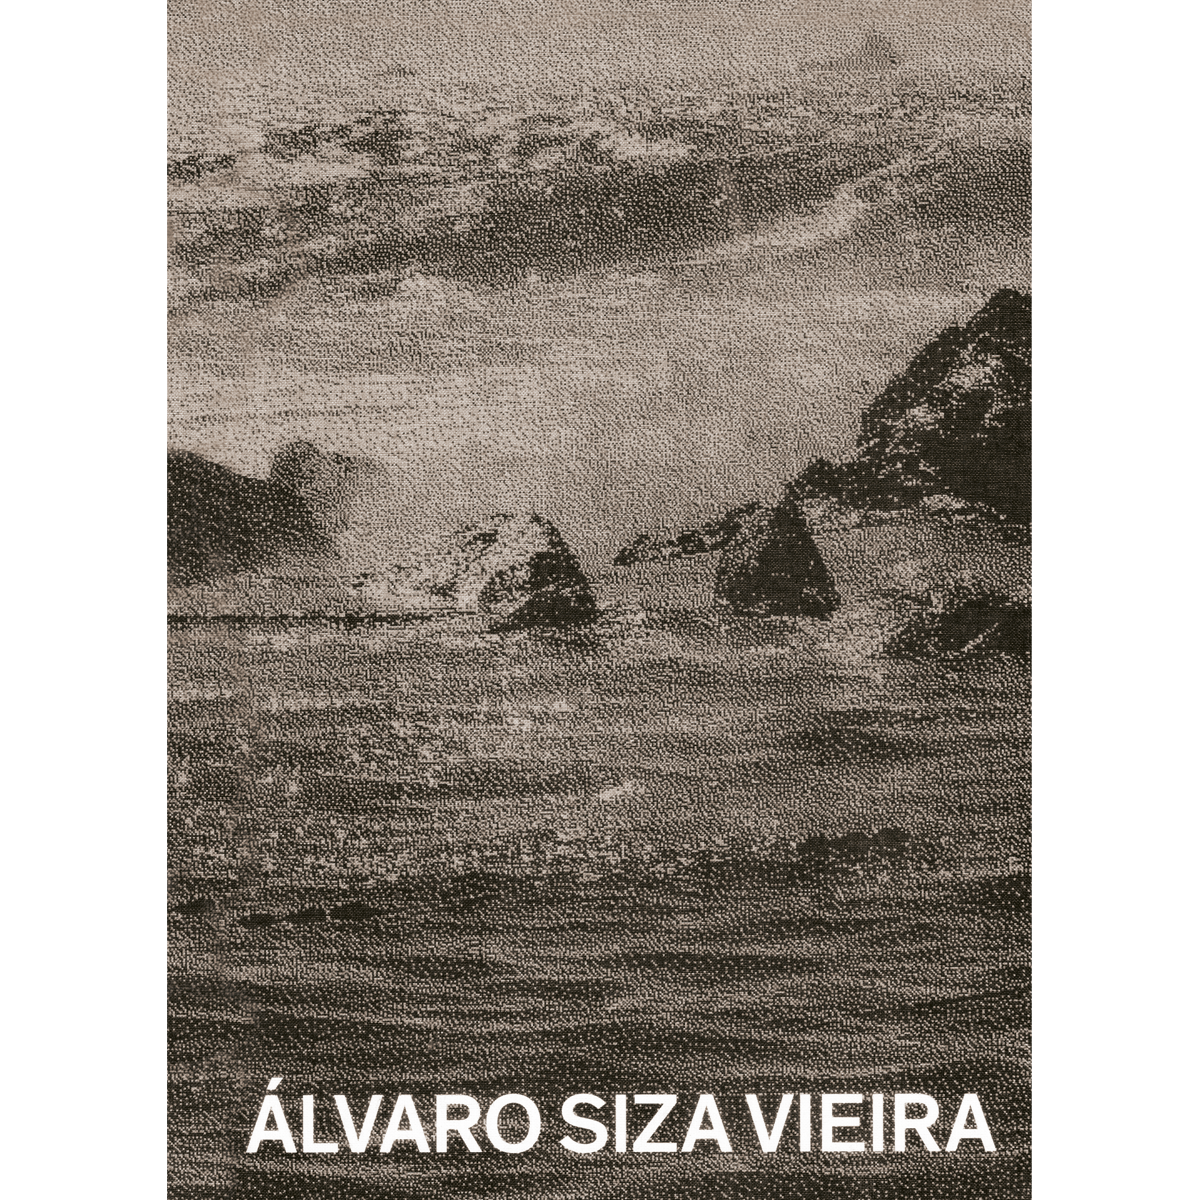 Álvaro Siza: piscinas en el mar